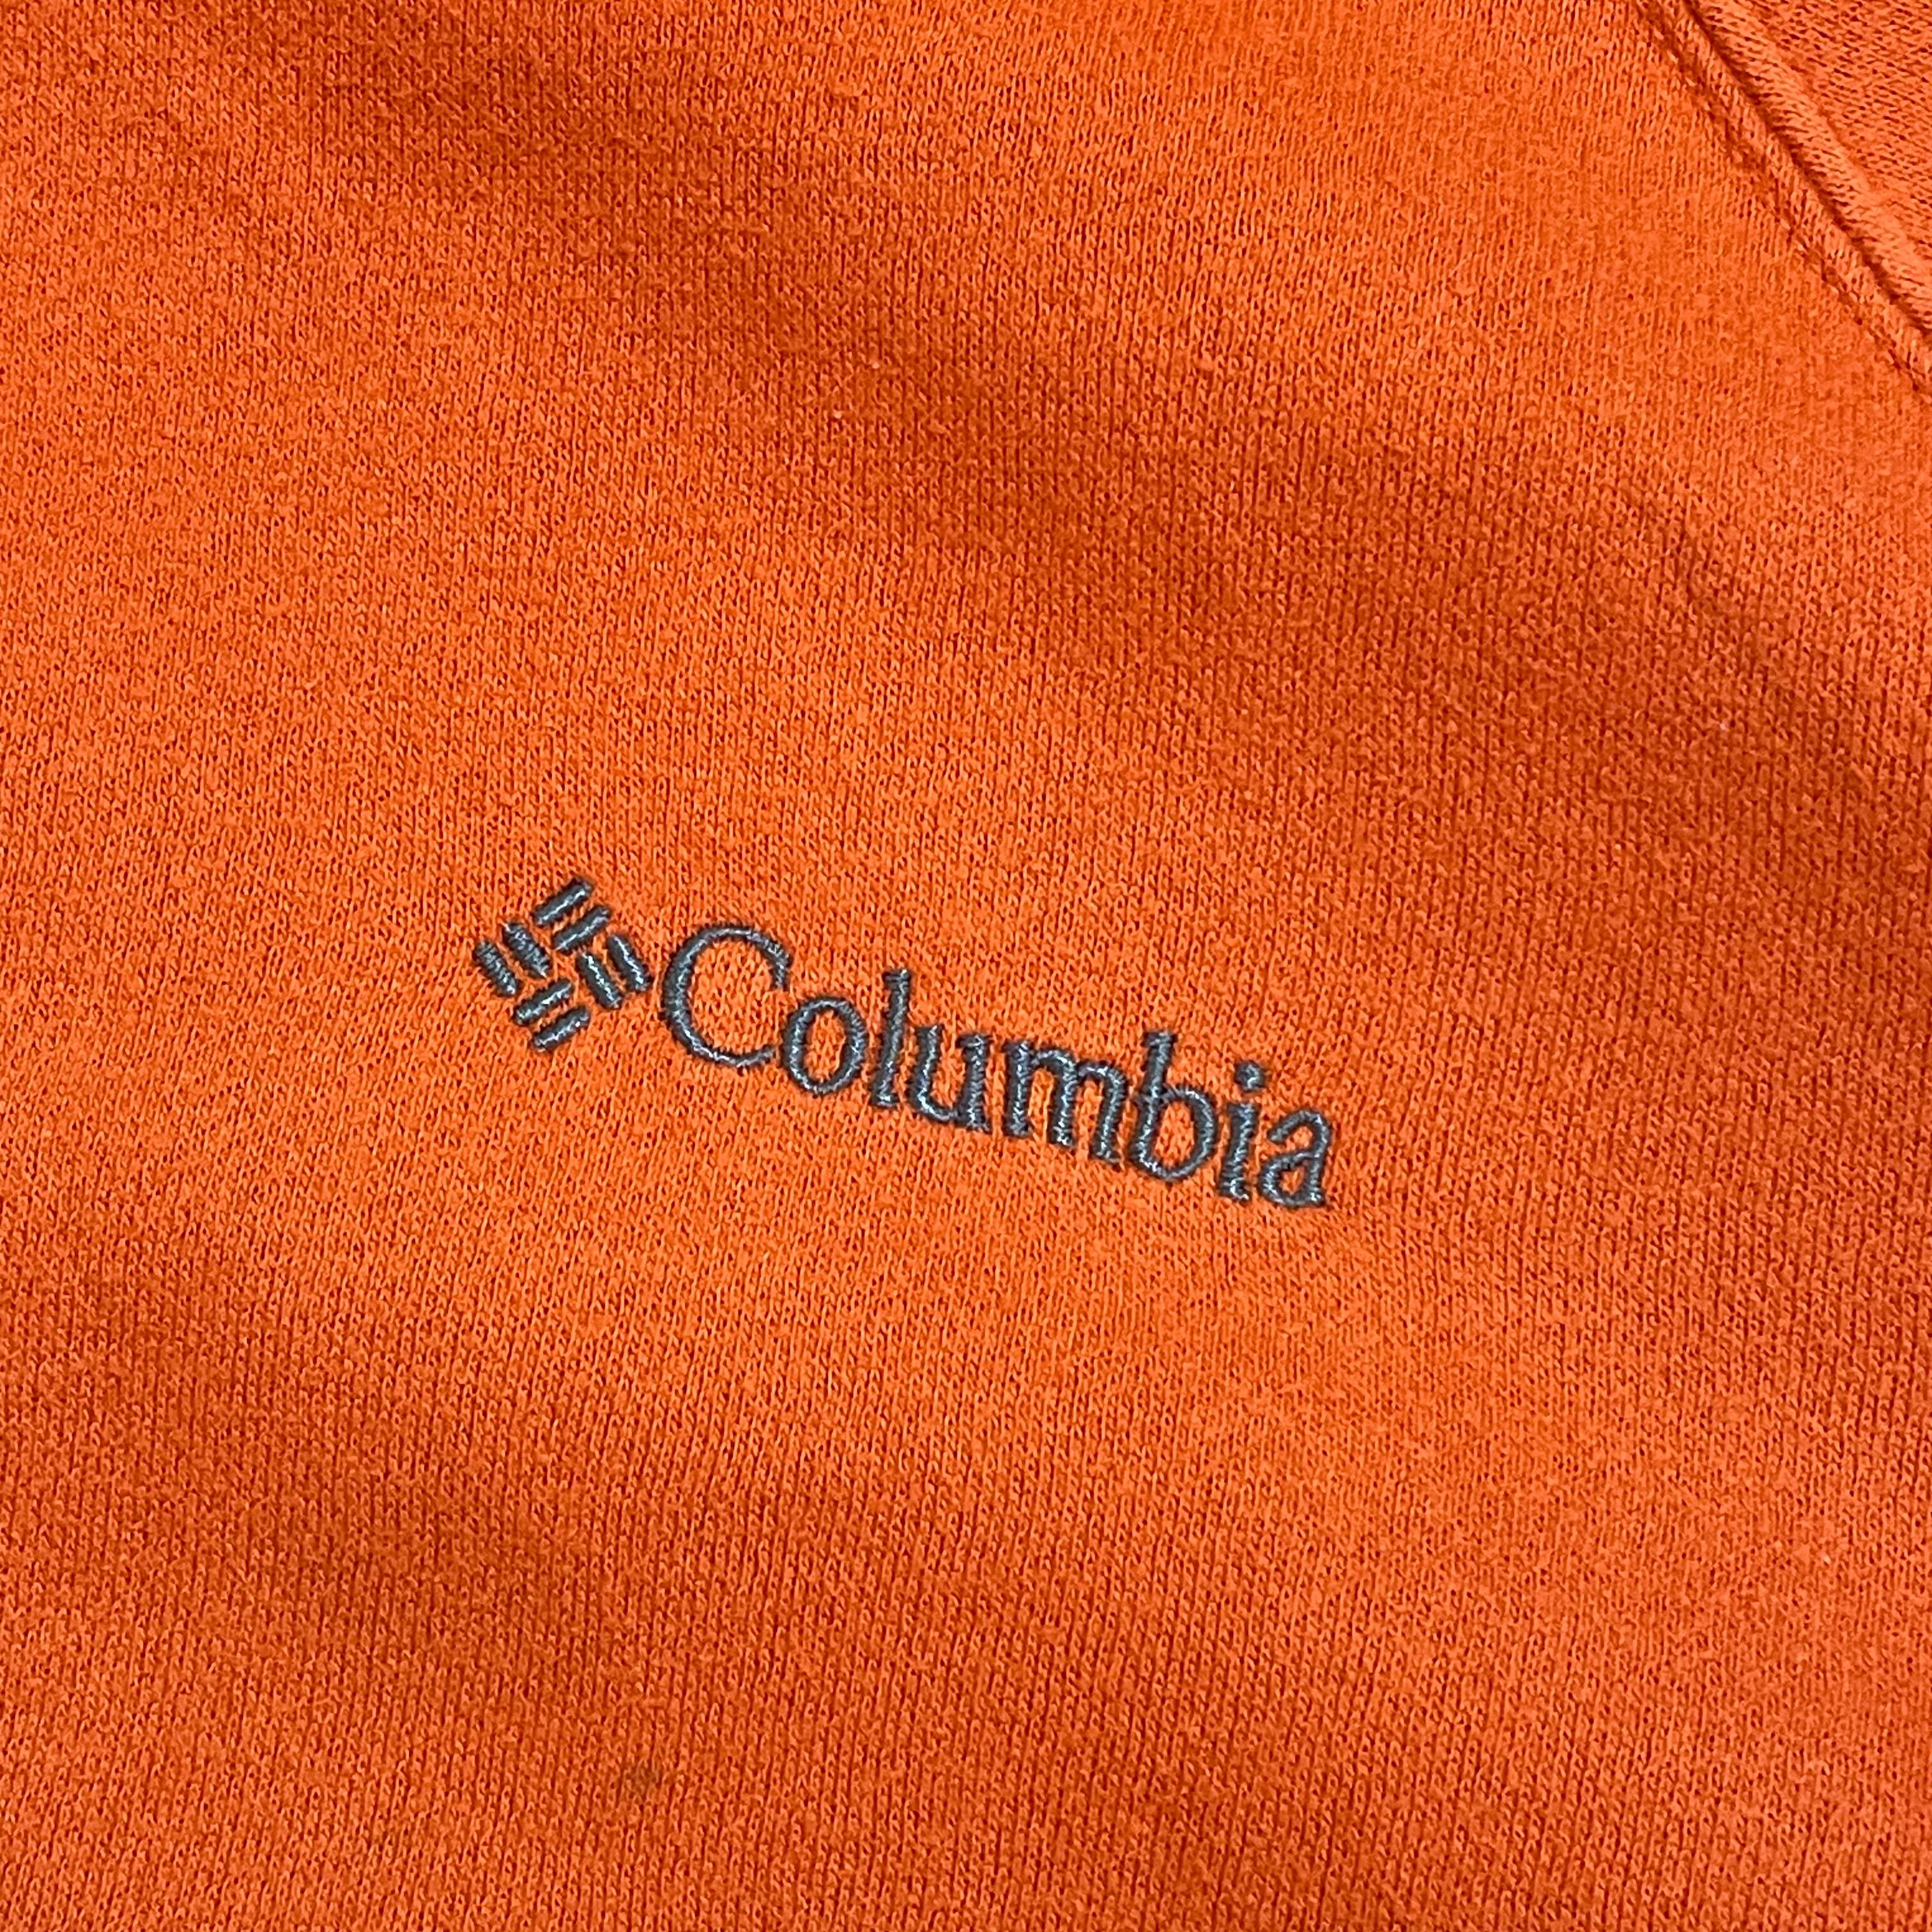 【大人気】Columbia コロンビア ナイロンパーカー 刺繍ロゴ オレンジ M